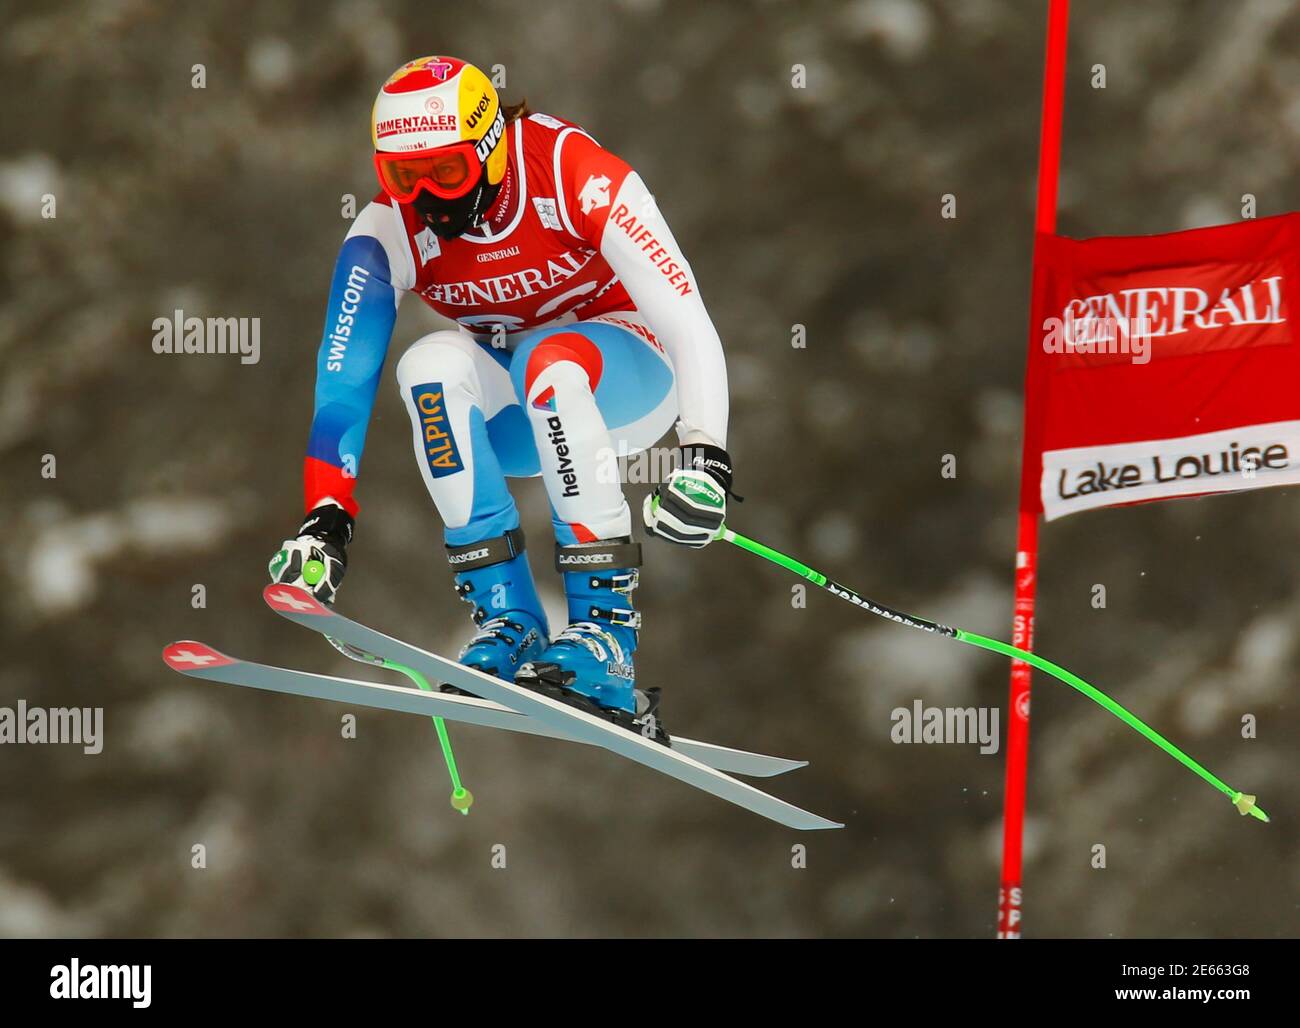 Lo sciatore svizzero Nadja Kamer prende il volo durante gli allenamenti di sci alpino per la Coppa del mondo delle Donne Downhill sul lago Louise, Alberta, 27 novembre 2012. REUTERS/Mike Blake (CANADA - Tags: SCI SPORTIVO) Foto Stock